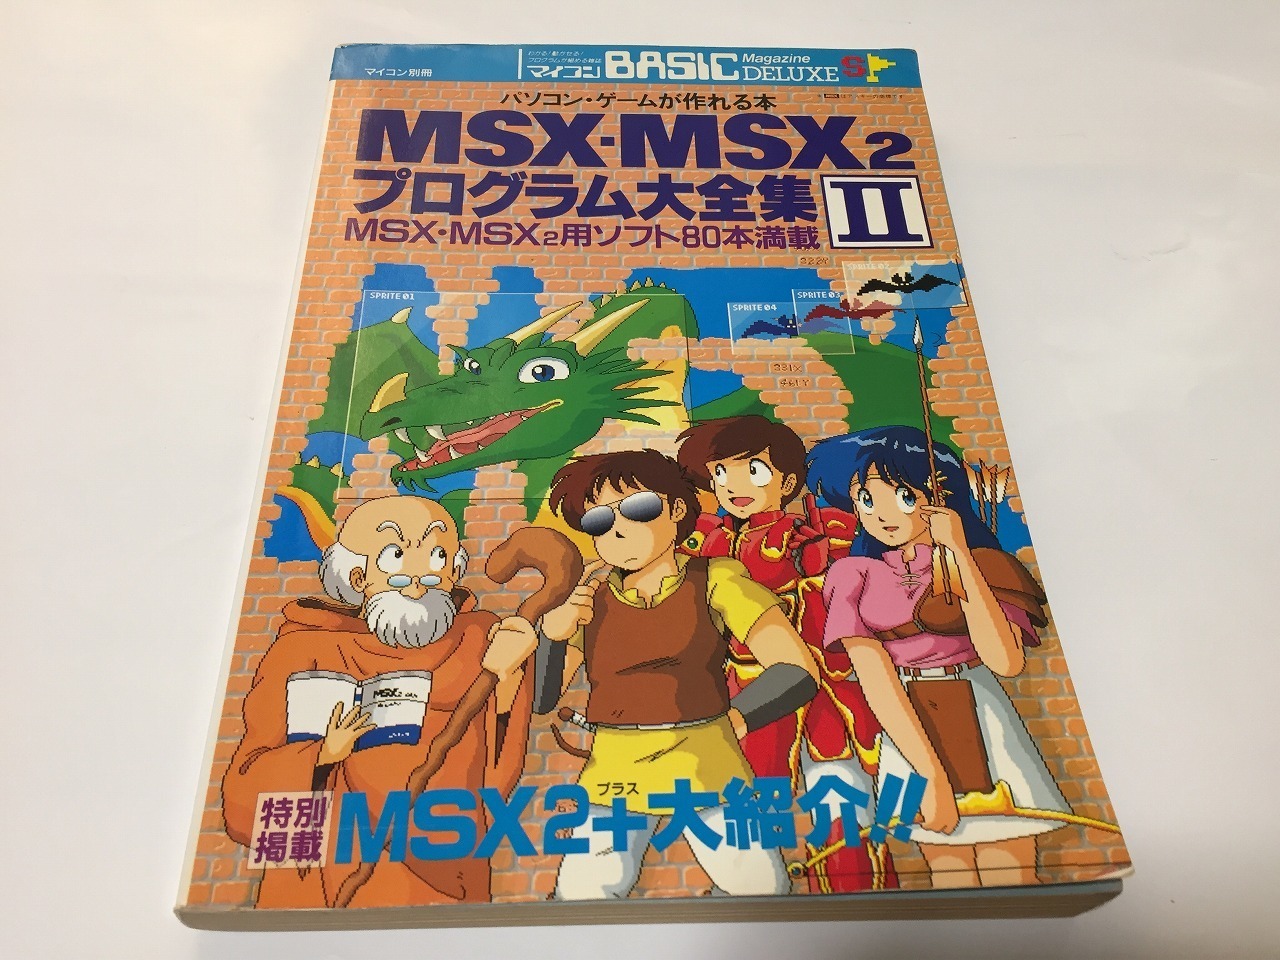 MSX-MSX2プログラム大全集-connectedremag.com